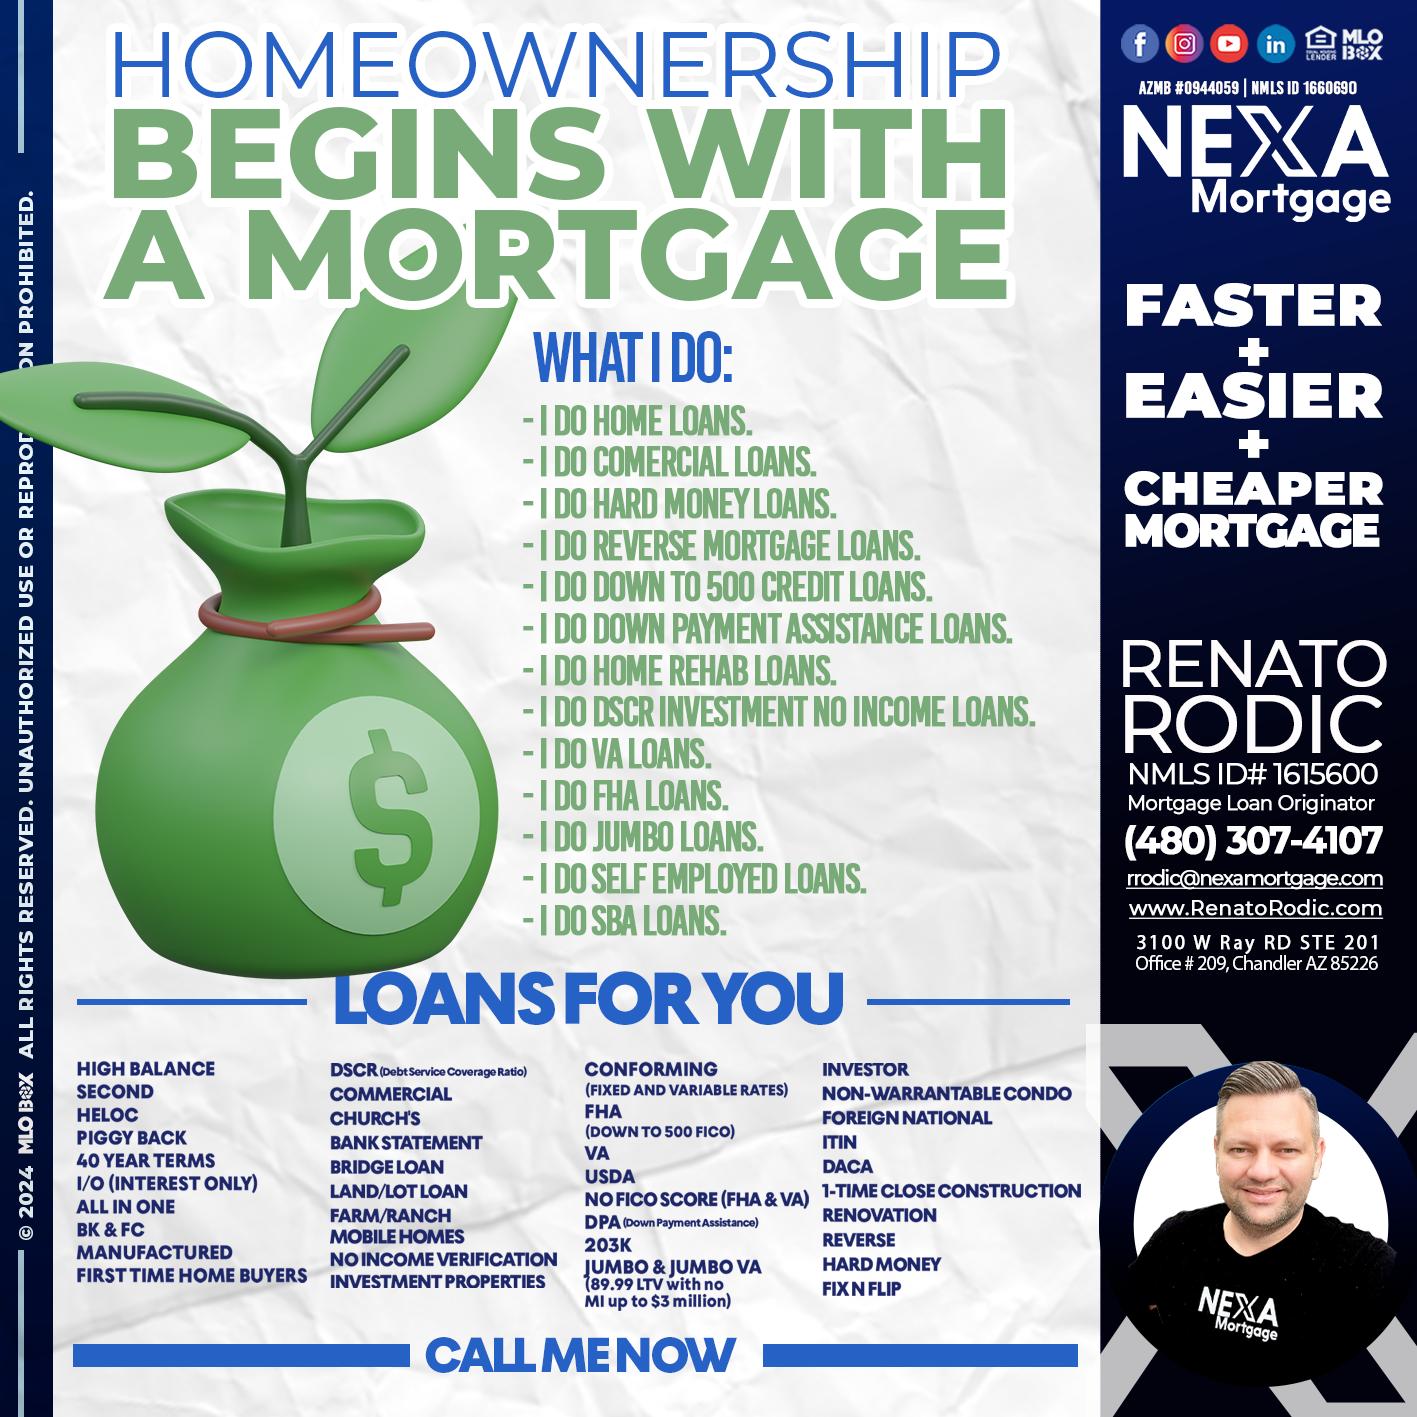 HOME OWNERSHIP - Renato Rodic -Mortgage Loan Originator